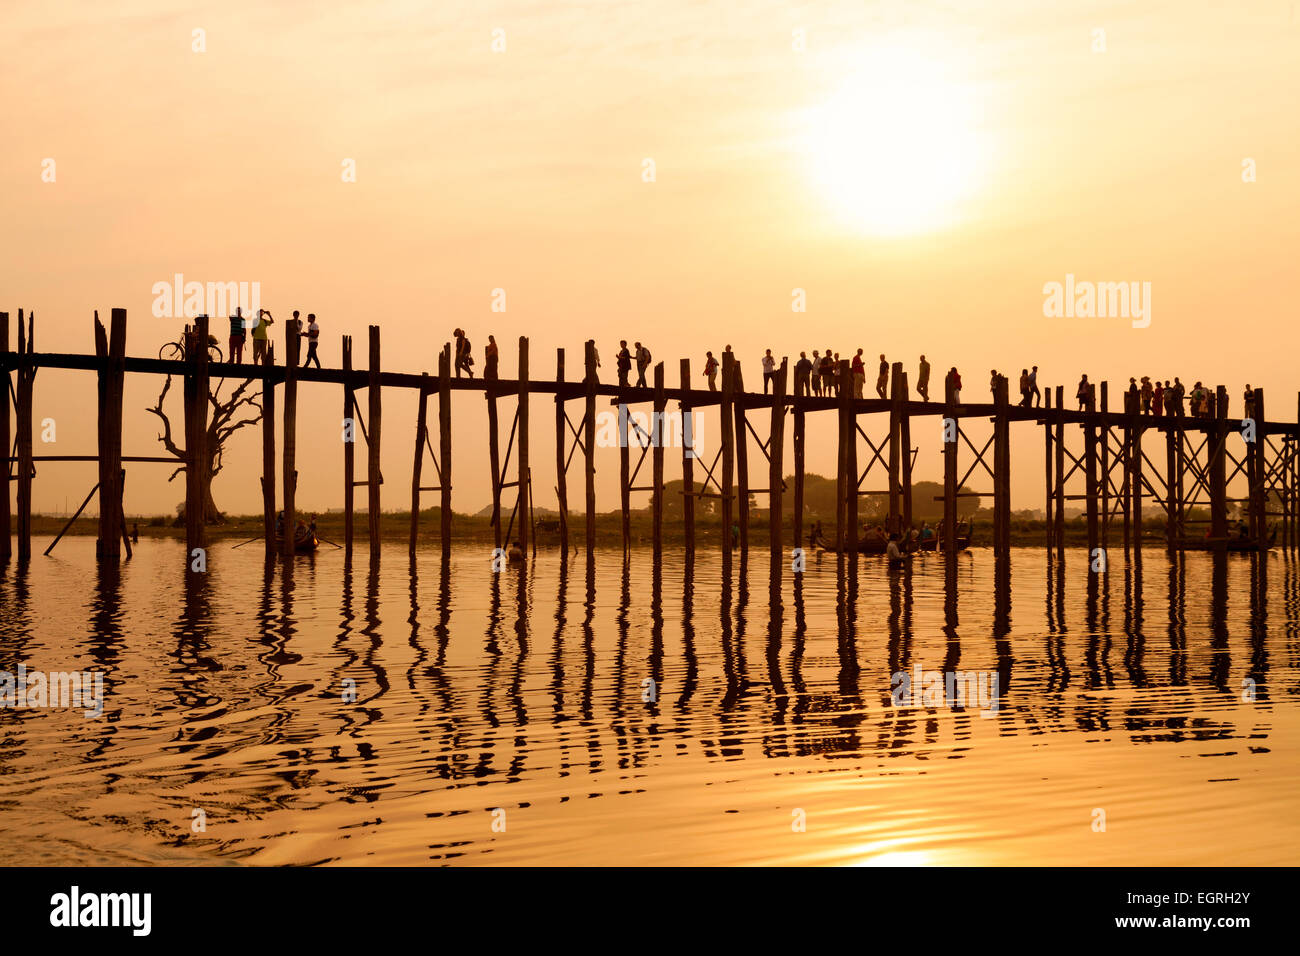 Le persone che attraversano la U Bein ponte sopra il lago Taungthaman al tramonto, Mandalay Myanmar ( Birmania ), Asia Foto Stock